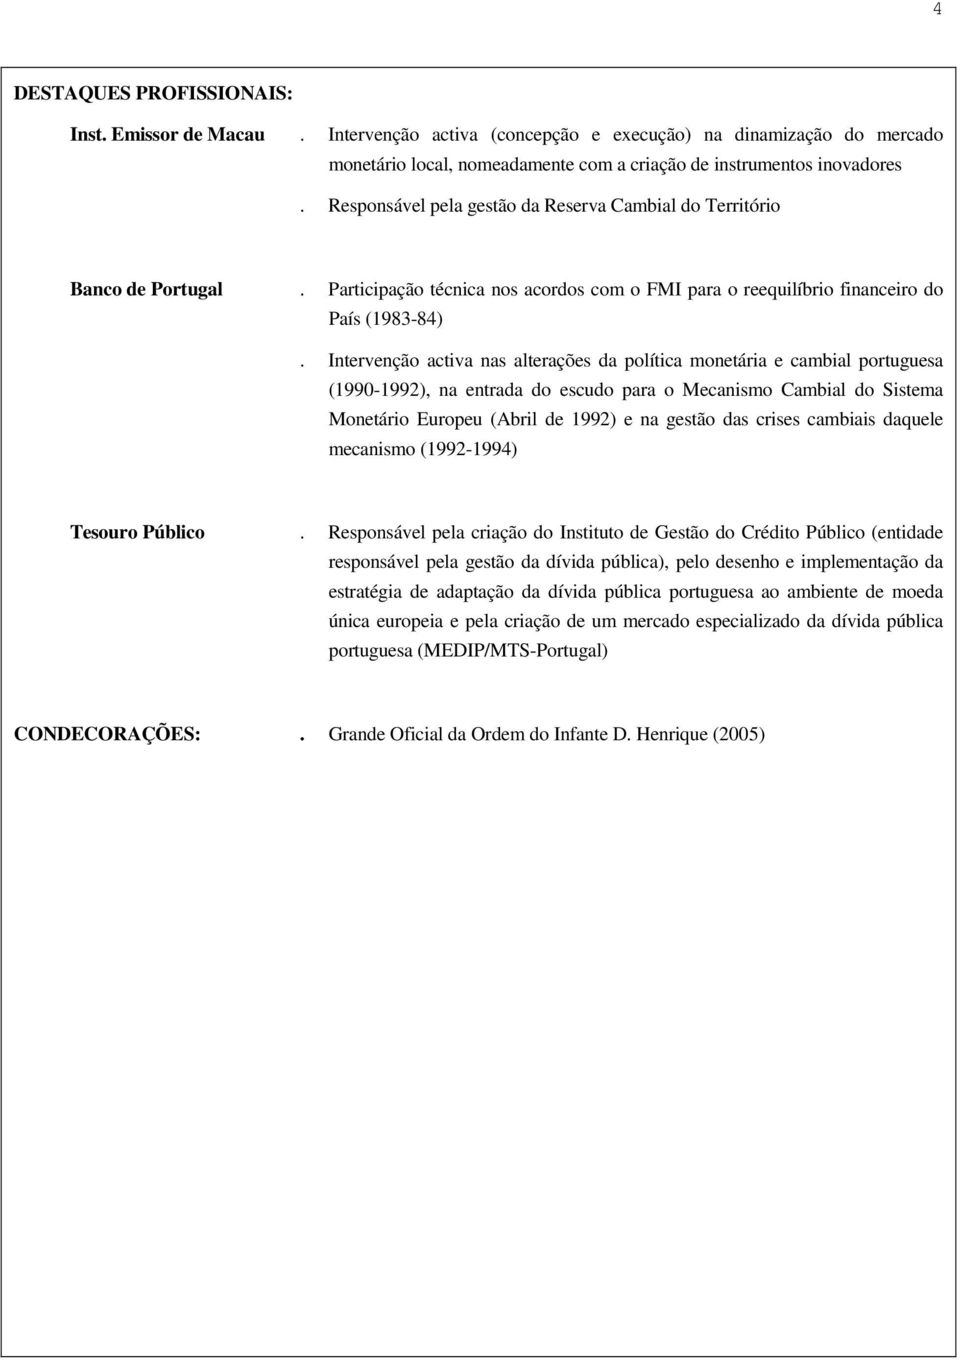 Intervenção activa nas alterações da política monetária e cambial portuguesa (1990-1992), na entrada do escudo para o Mecanismo Cambial do Sistema Monetário Europeu (Abril de 1992) e na gestão das